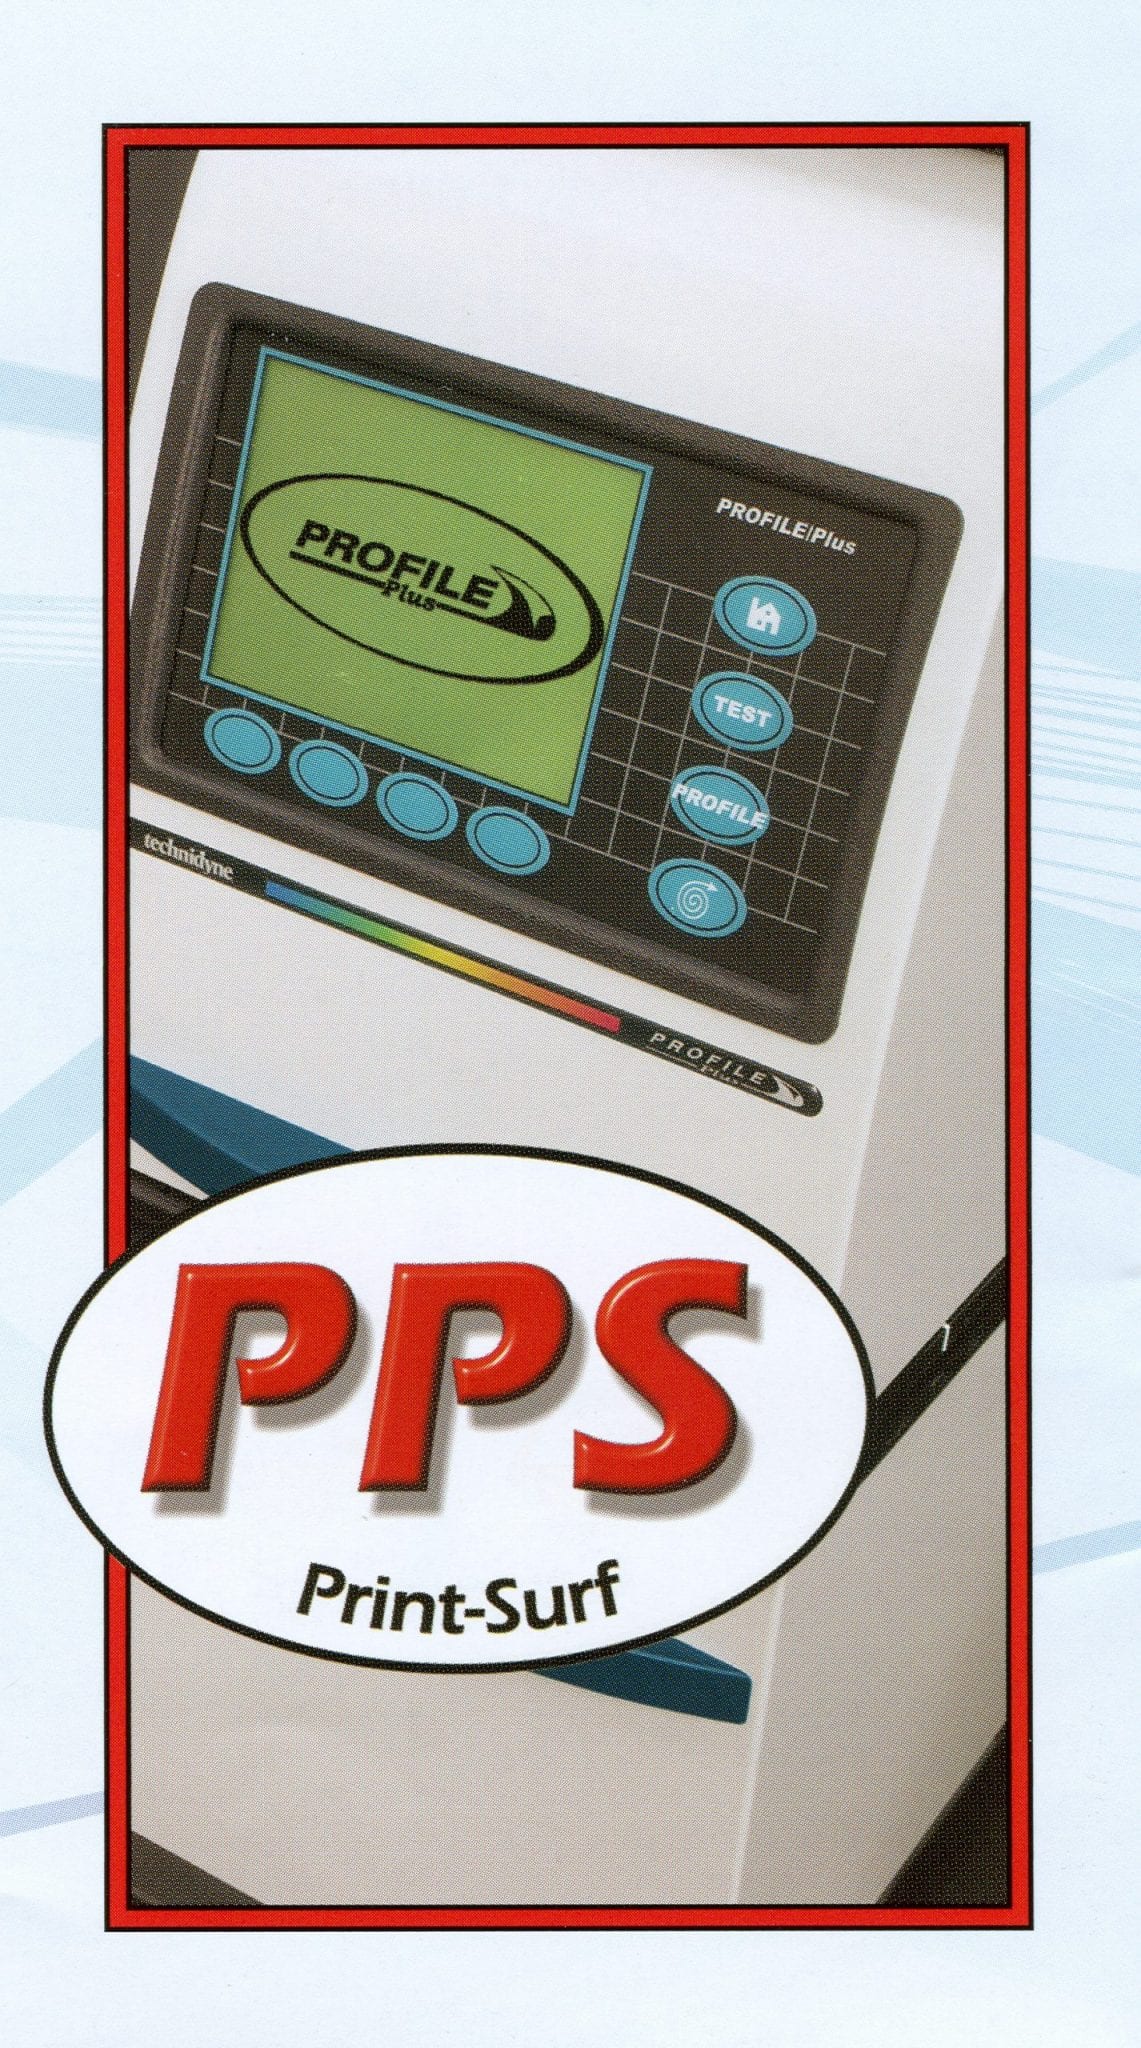 PROFILE Plus PPS – Technidyne Parker Print Surf